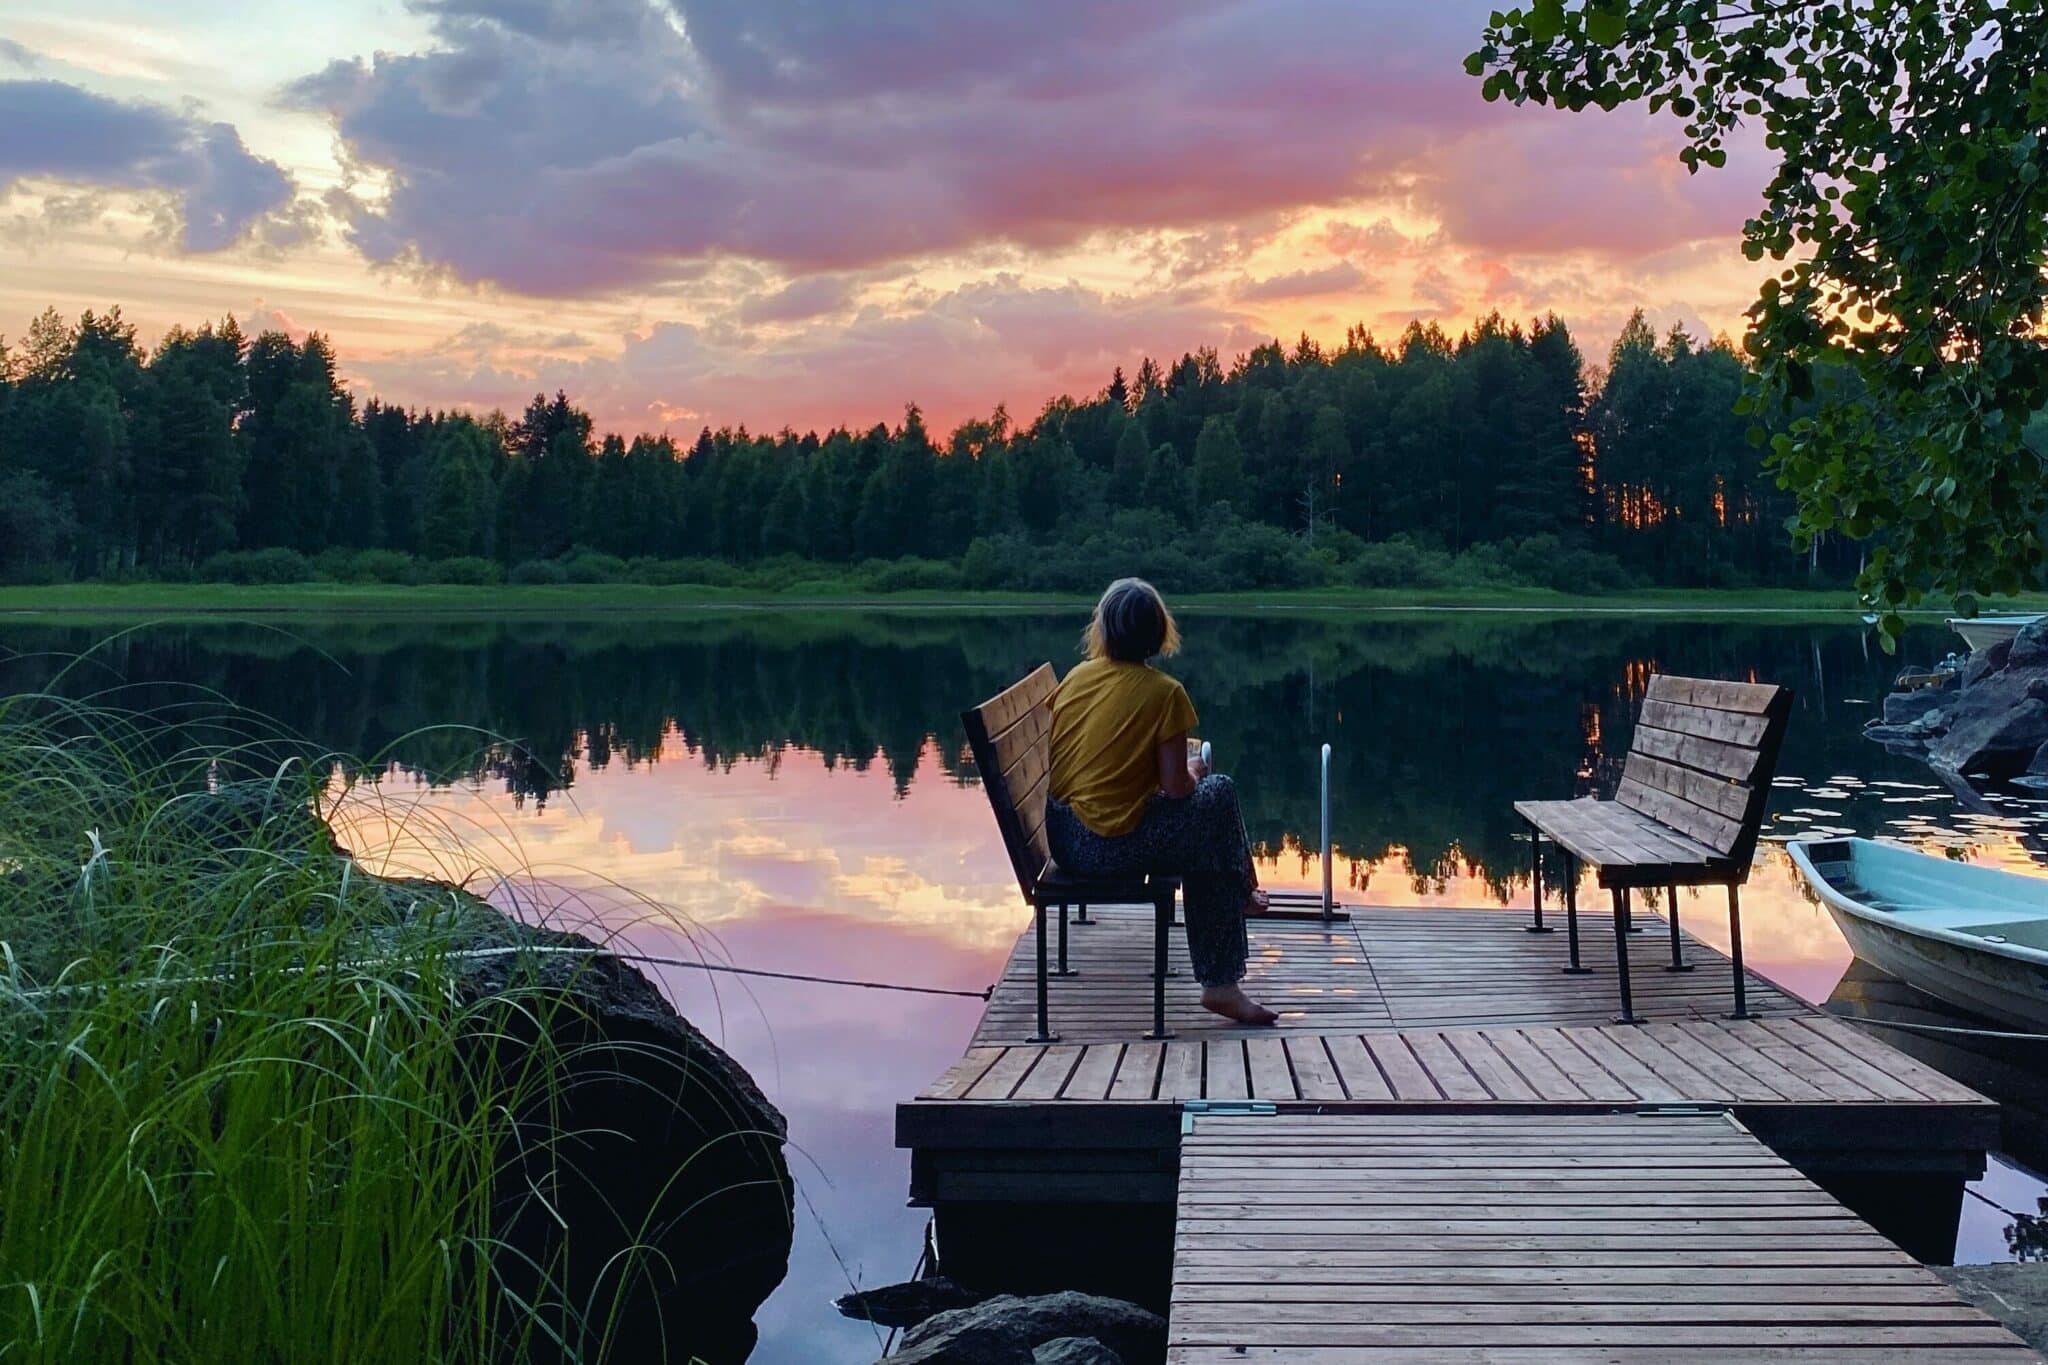 Das Bild zeigt eine Frau, sie sitzt auf einer Bank auf einem Steg. Im Hintergrund sieht man einen See und darüber ein rosafarbener Sonnenuntergang.